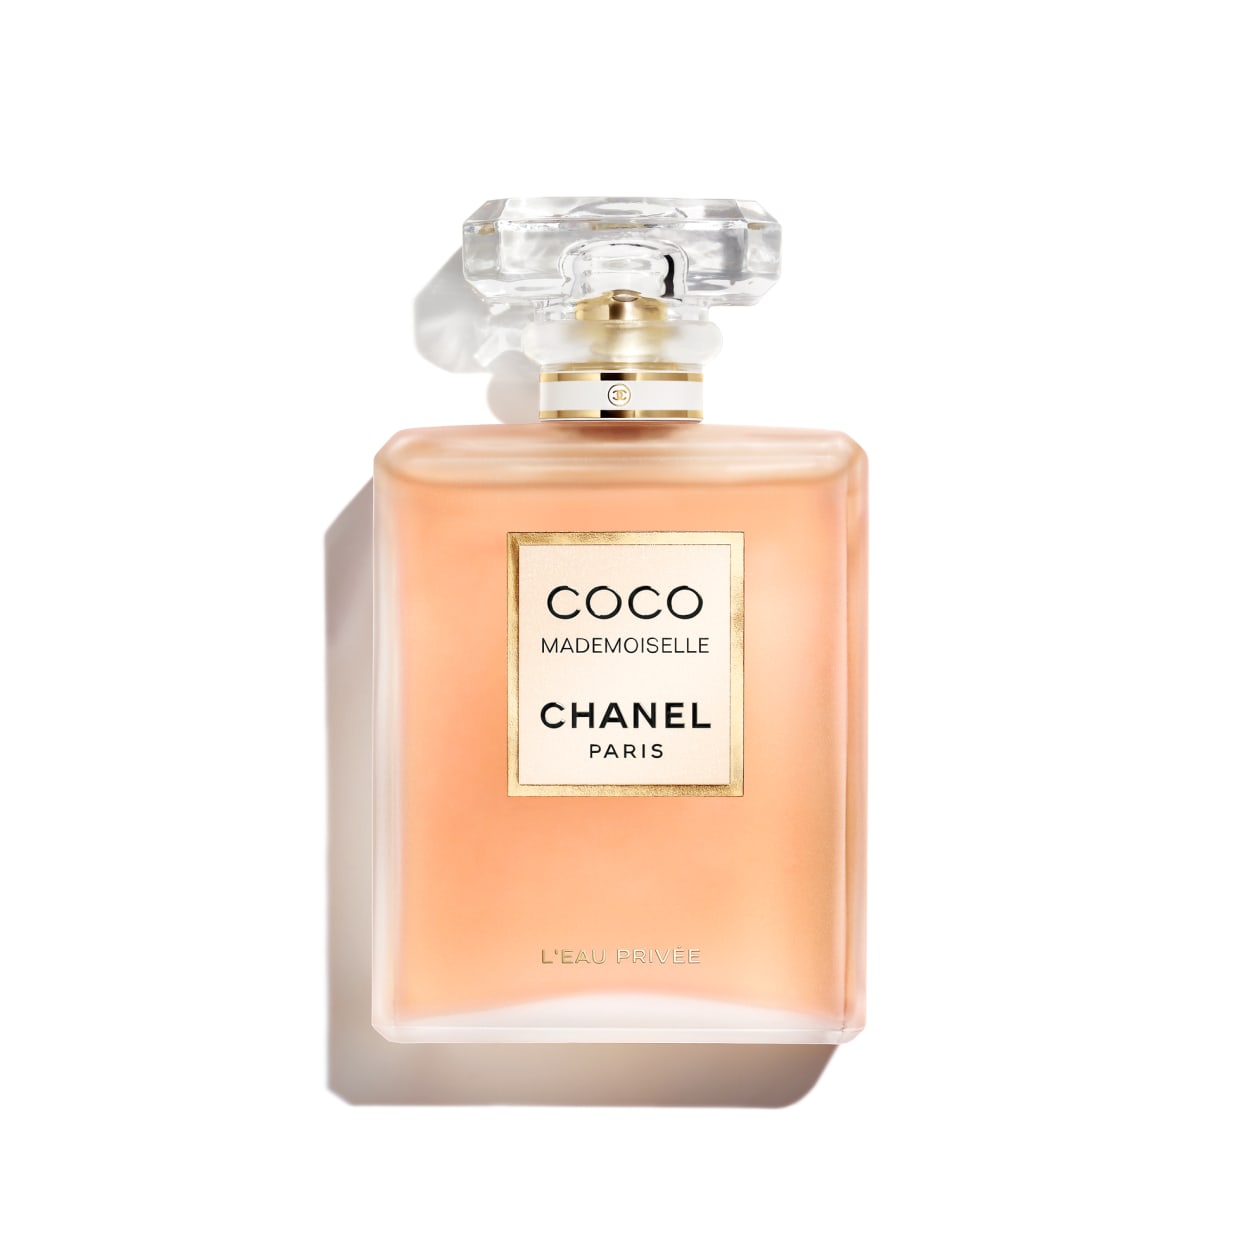 Chanel Coco Mademoiselle L'Eau Privée - Nước hoa chính hãng 100% nhập khẩu  Pháp, Mỹ…Giá tốt tại Perfume168